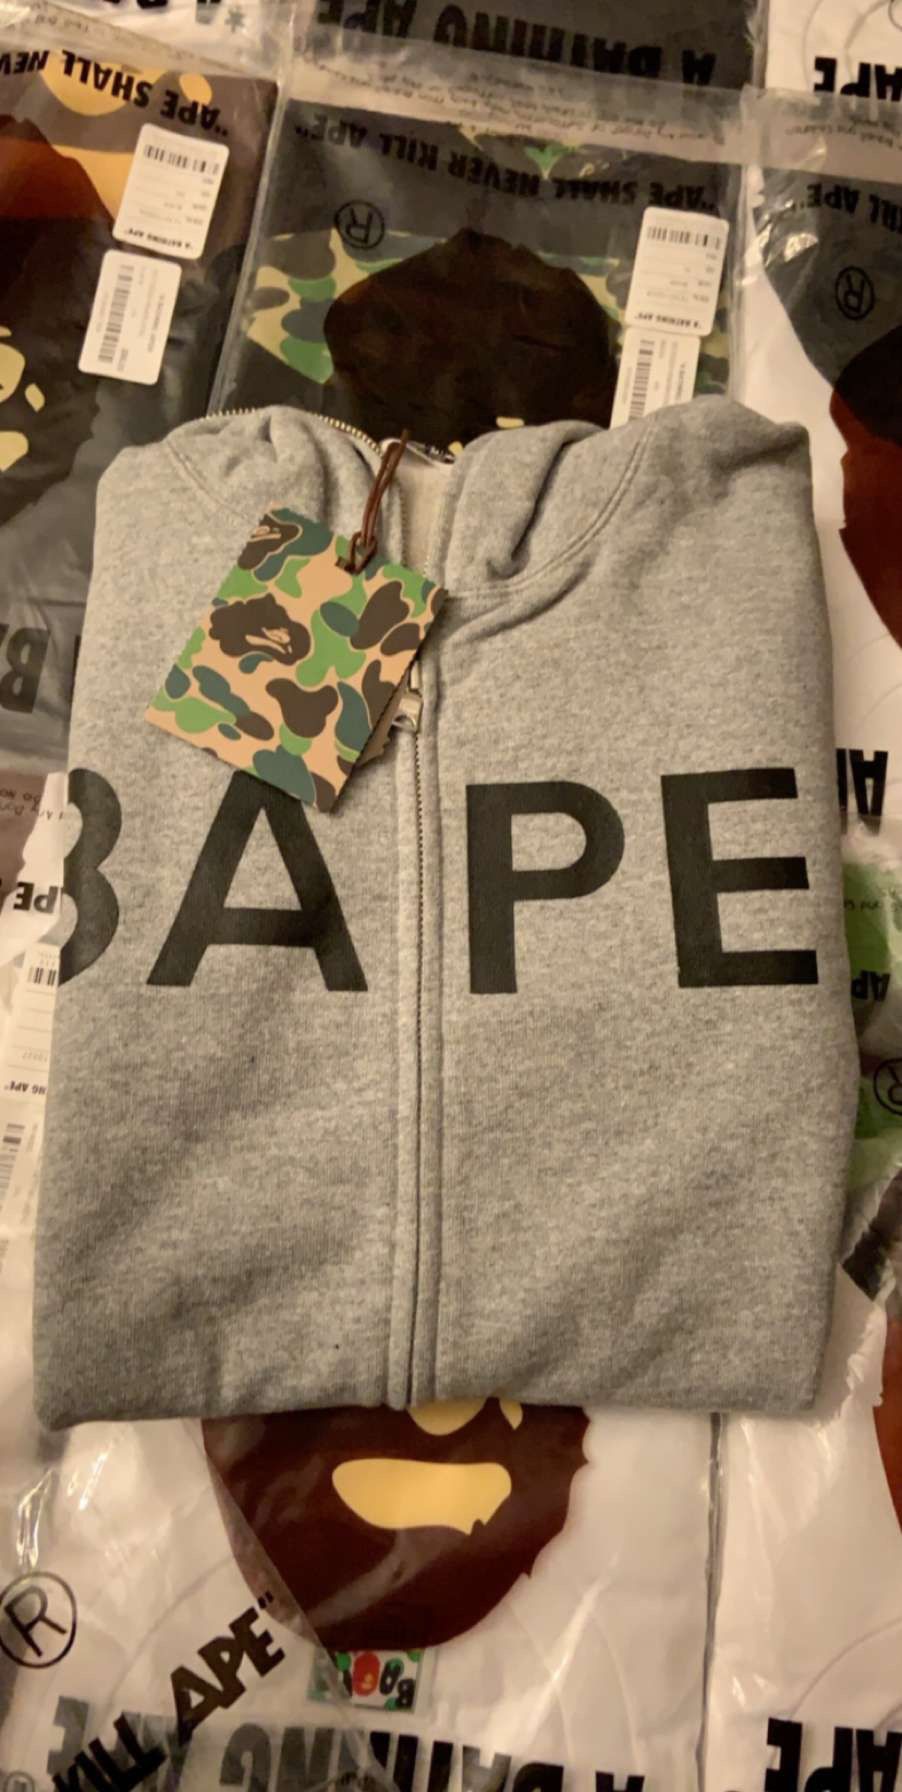 Bape hoodie